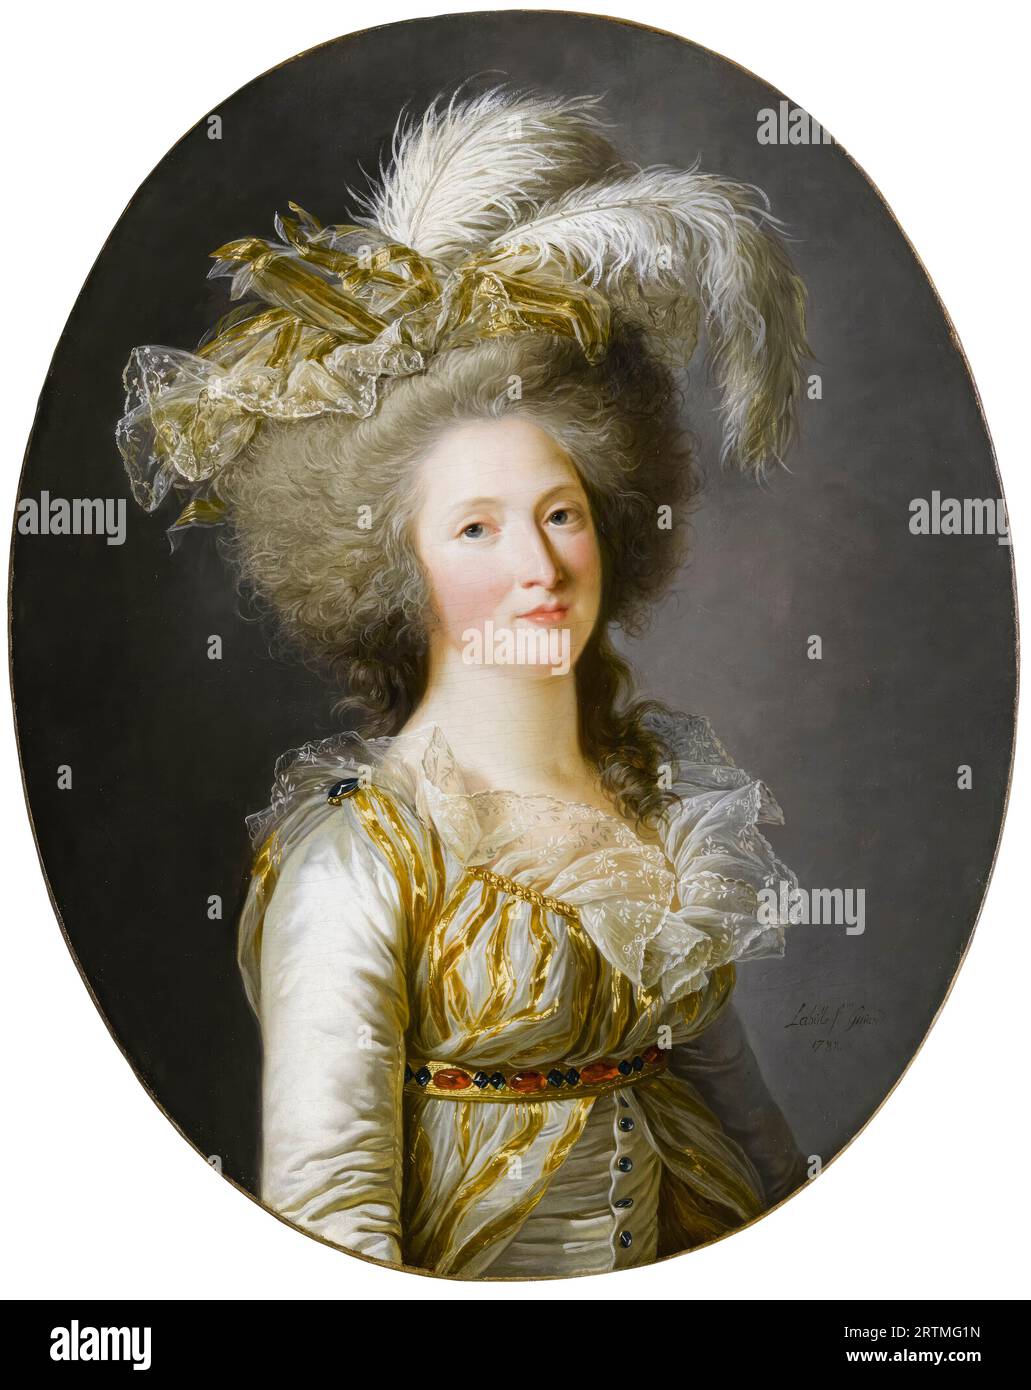 Élisabeth Philippe Marie Hélène of France (1764-1794), called 'Madame Elisabeth', portrait painting in oil on canvas by Adélaïde Labille-Guiard, 1788 Stock Photo